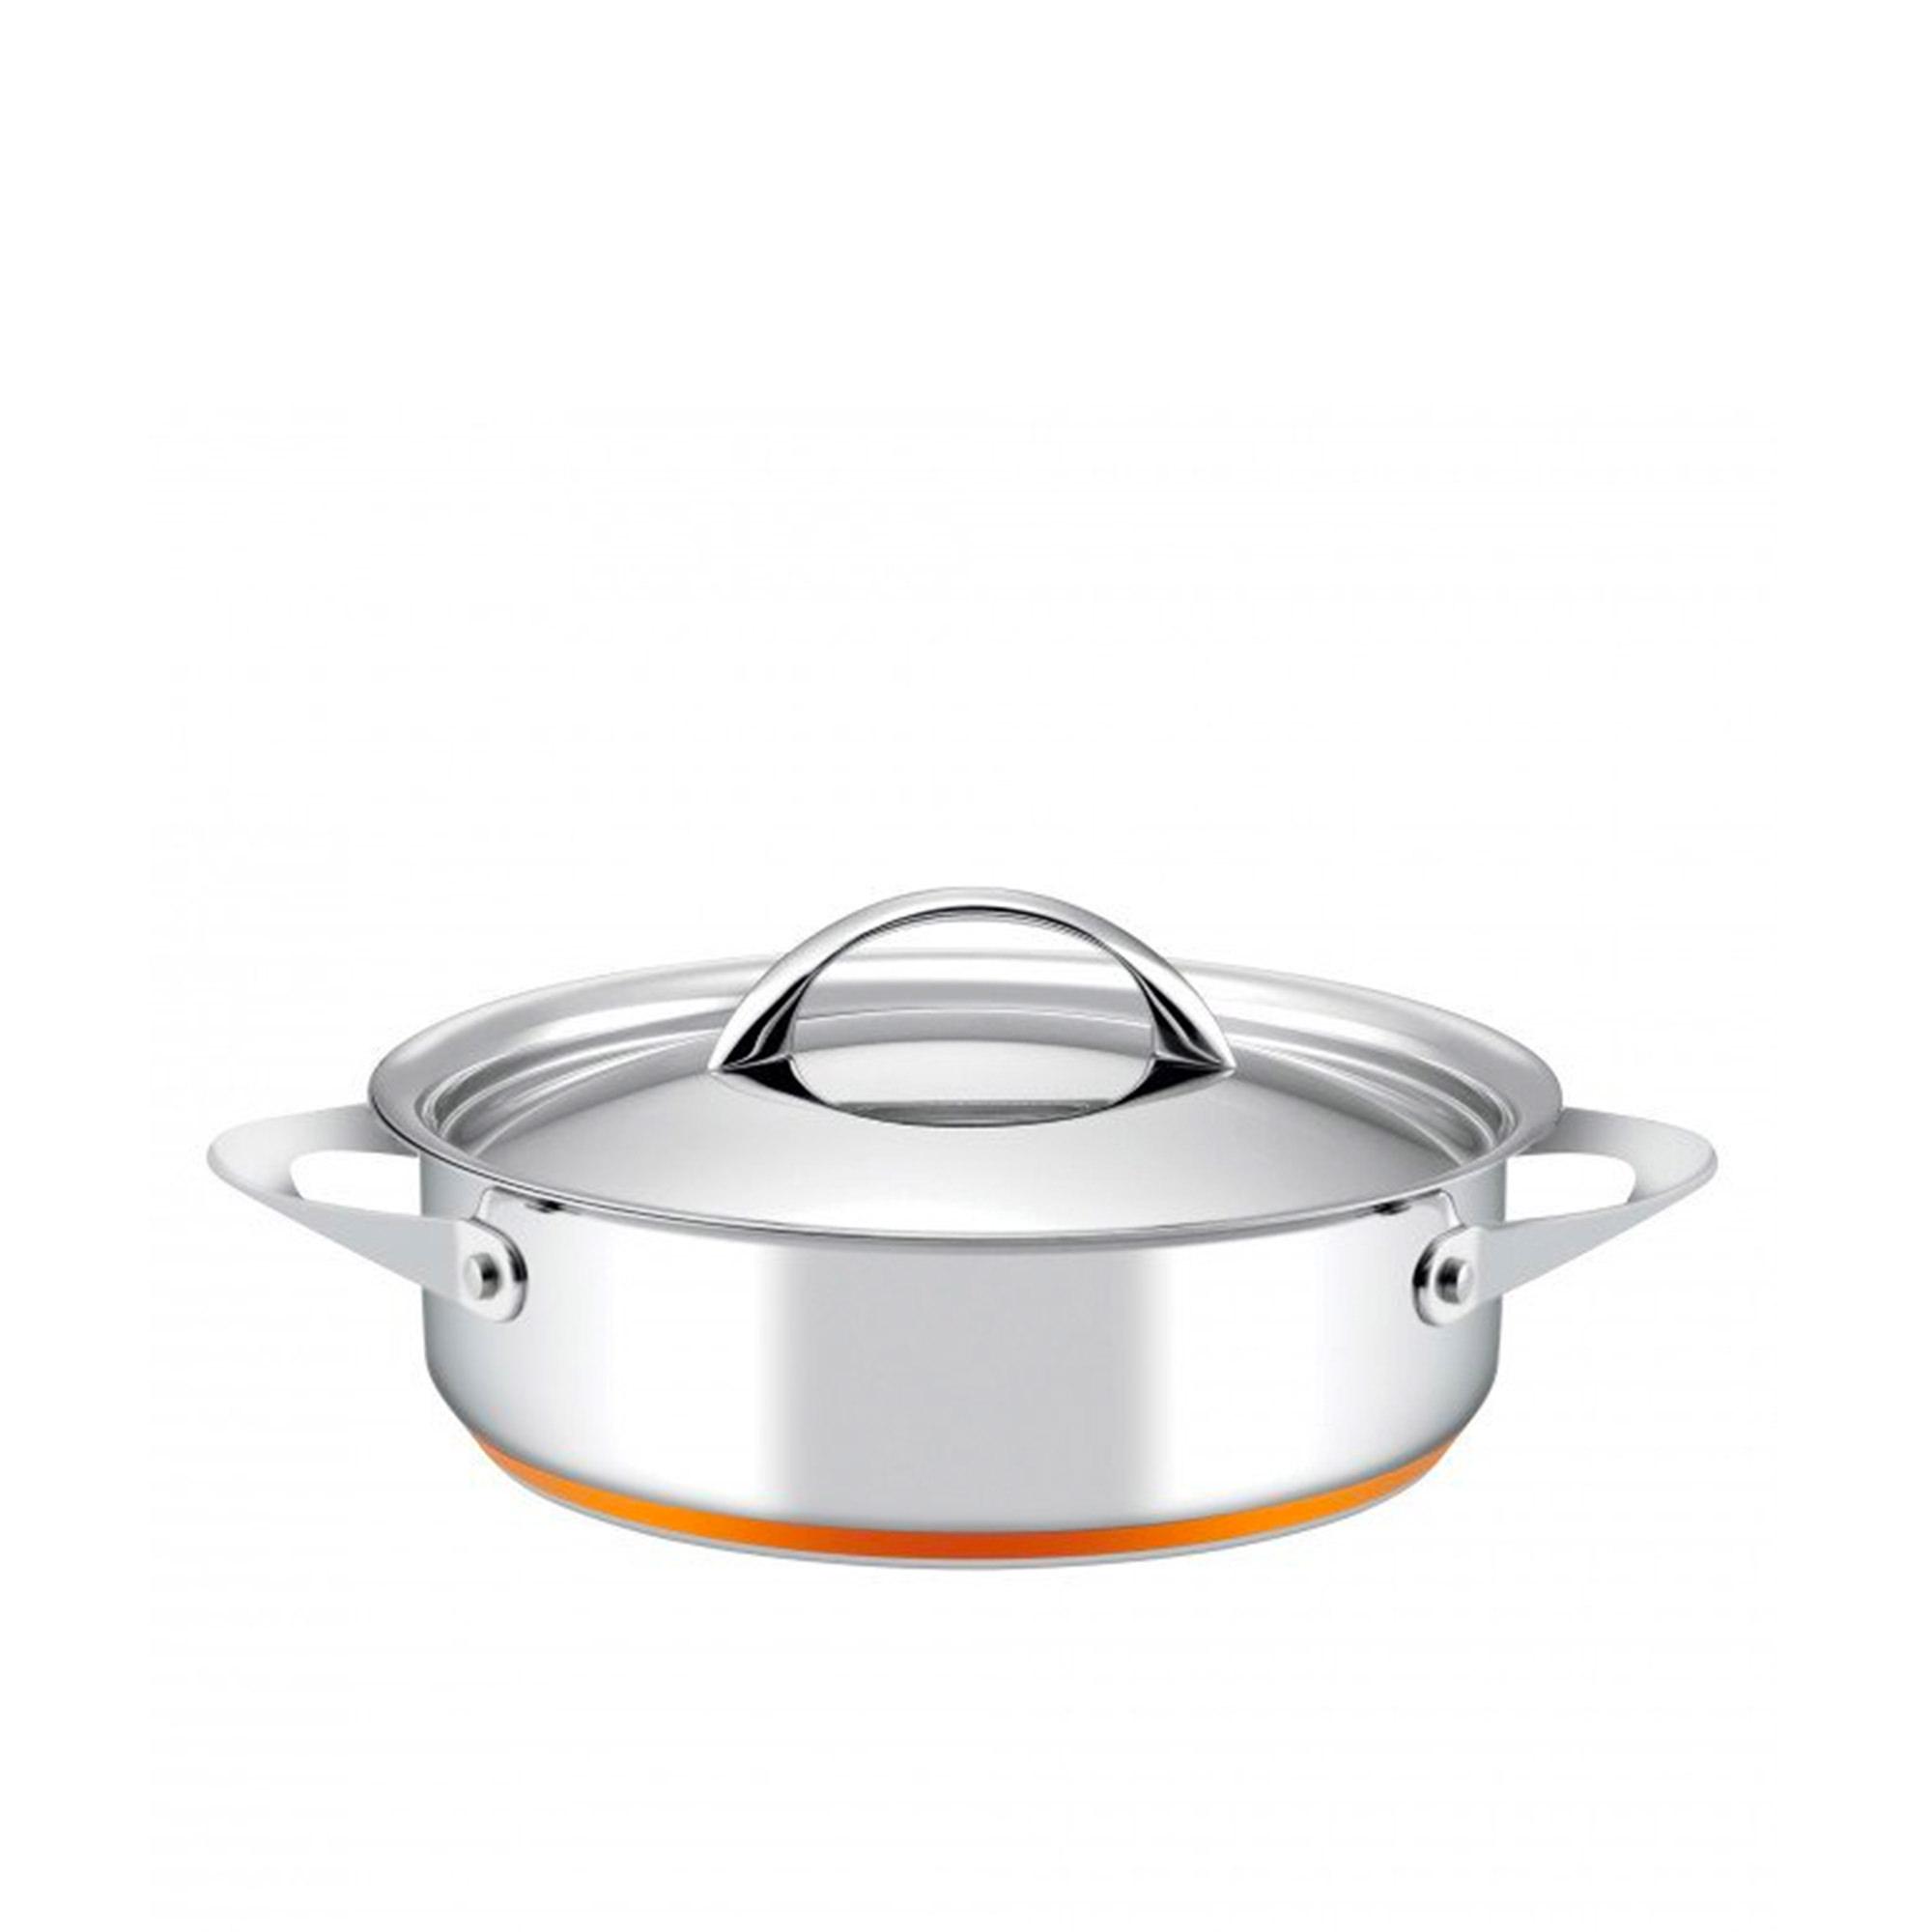 Essteele Per Vita 4pc Stainless Steel Cookware Set Image 3